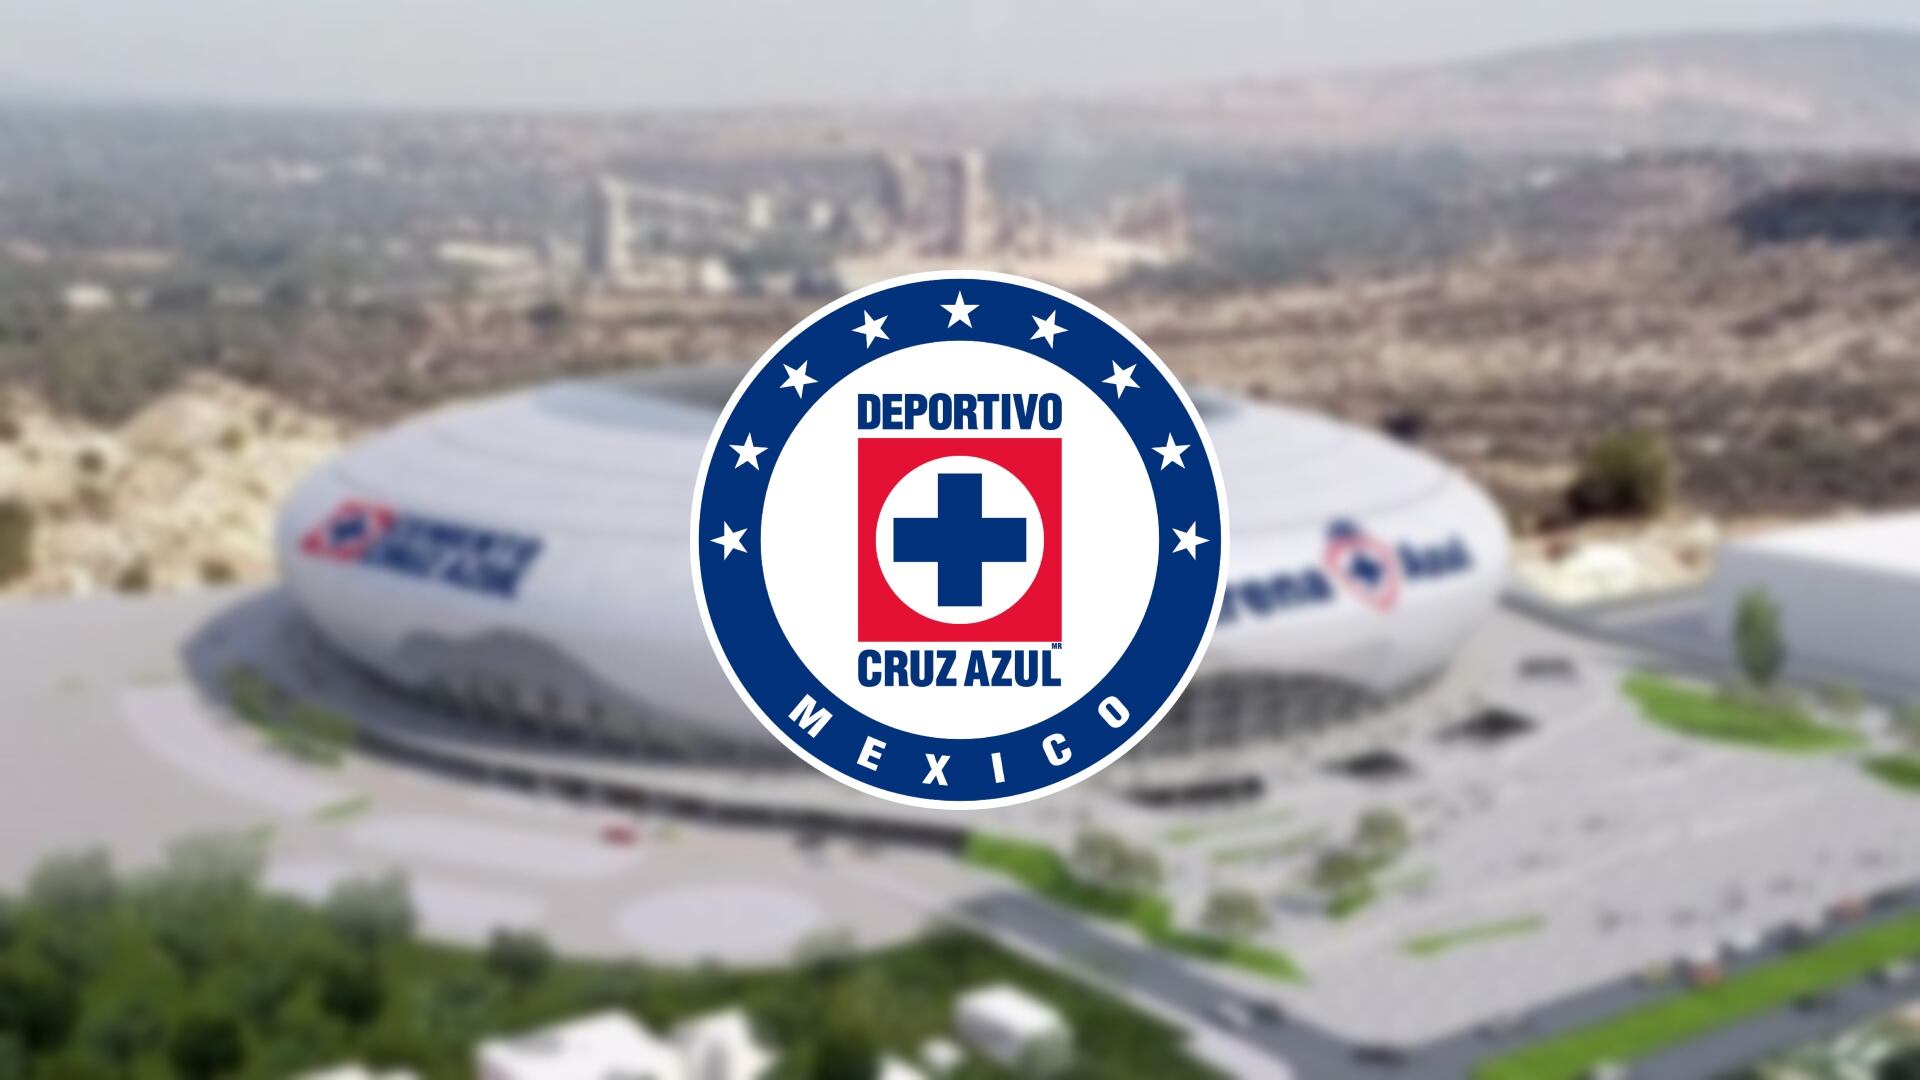 Previo al Rayados vs Cruz Azul, habrá nuevo estadio y los detalles que se comienzan a conocer del proyecto